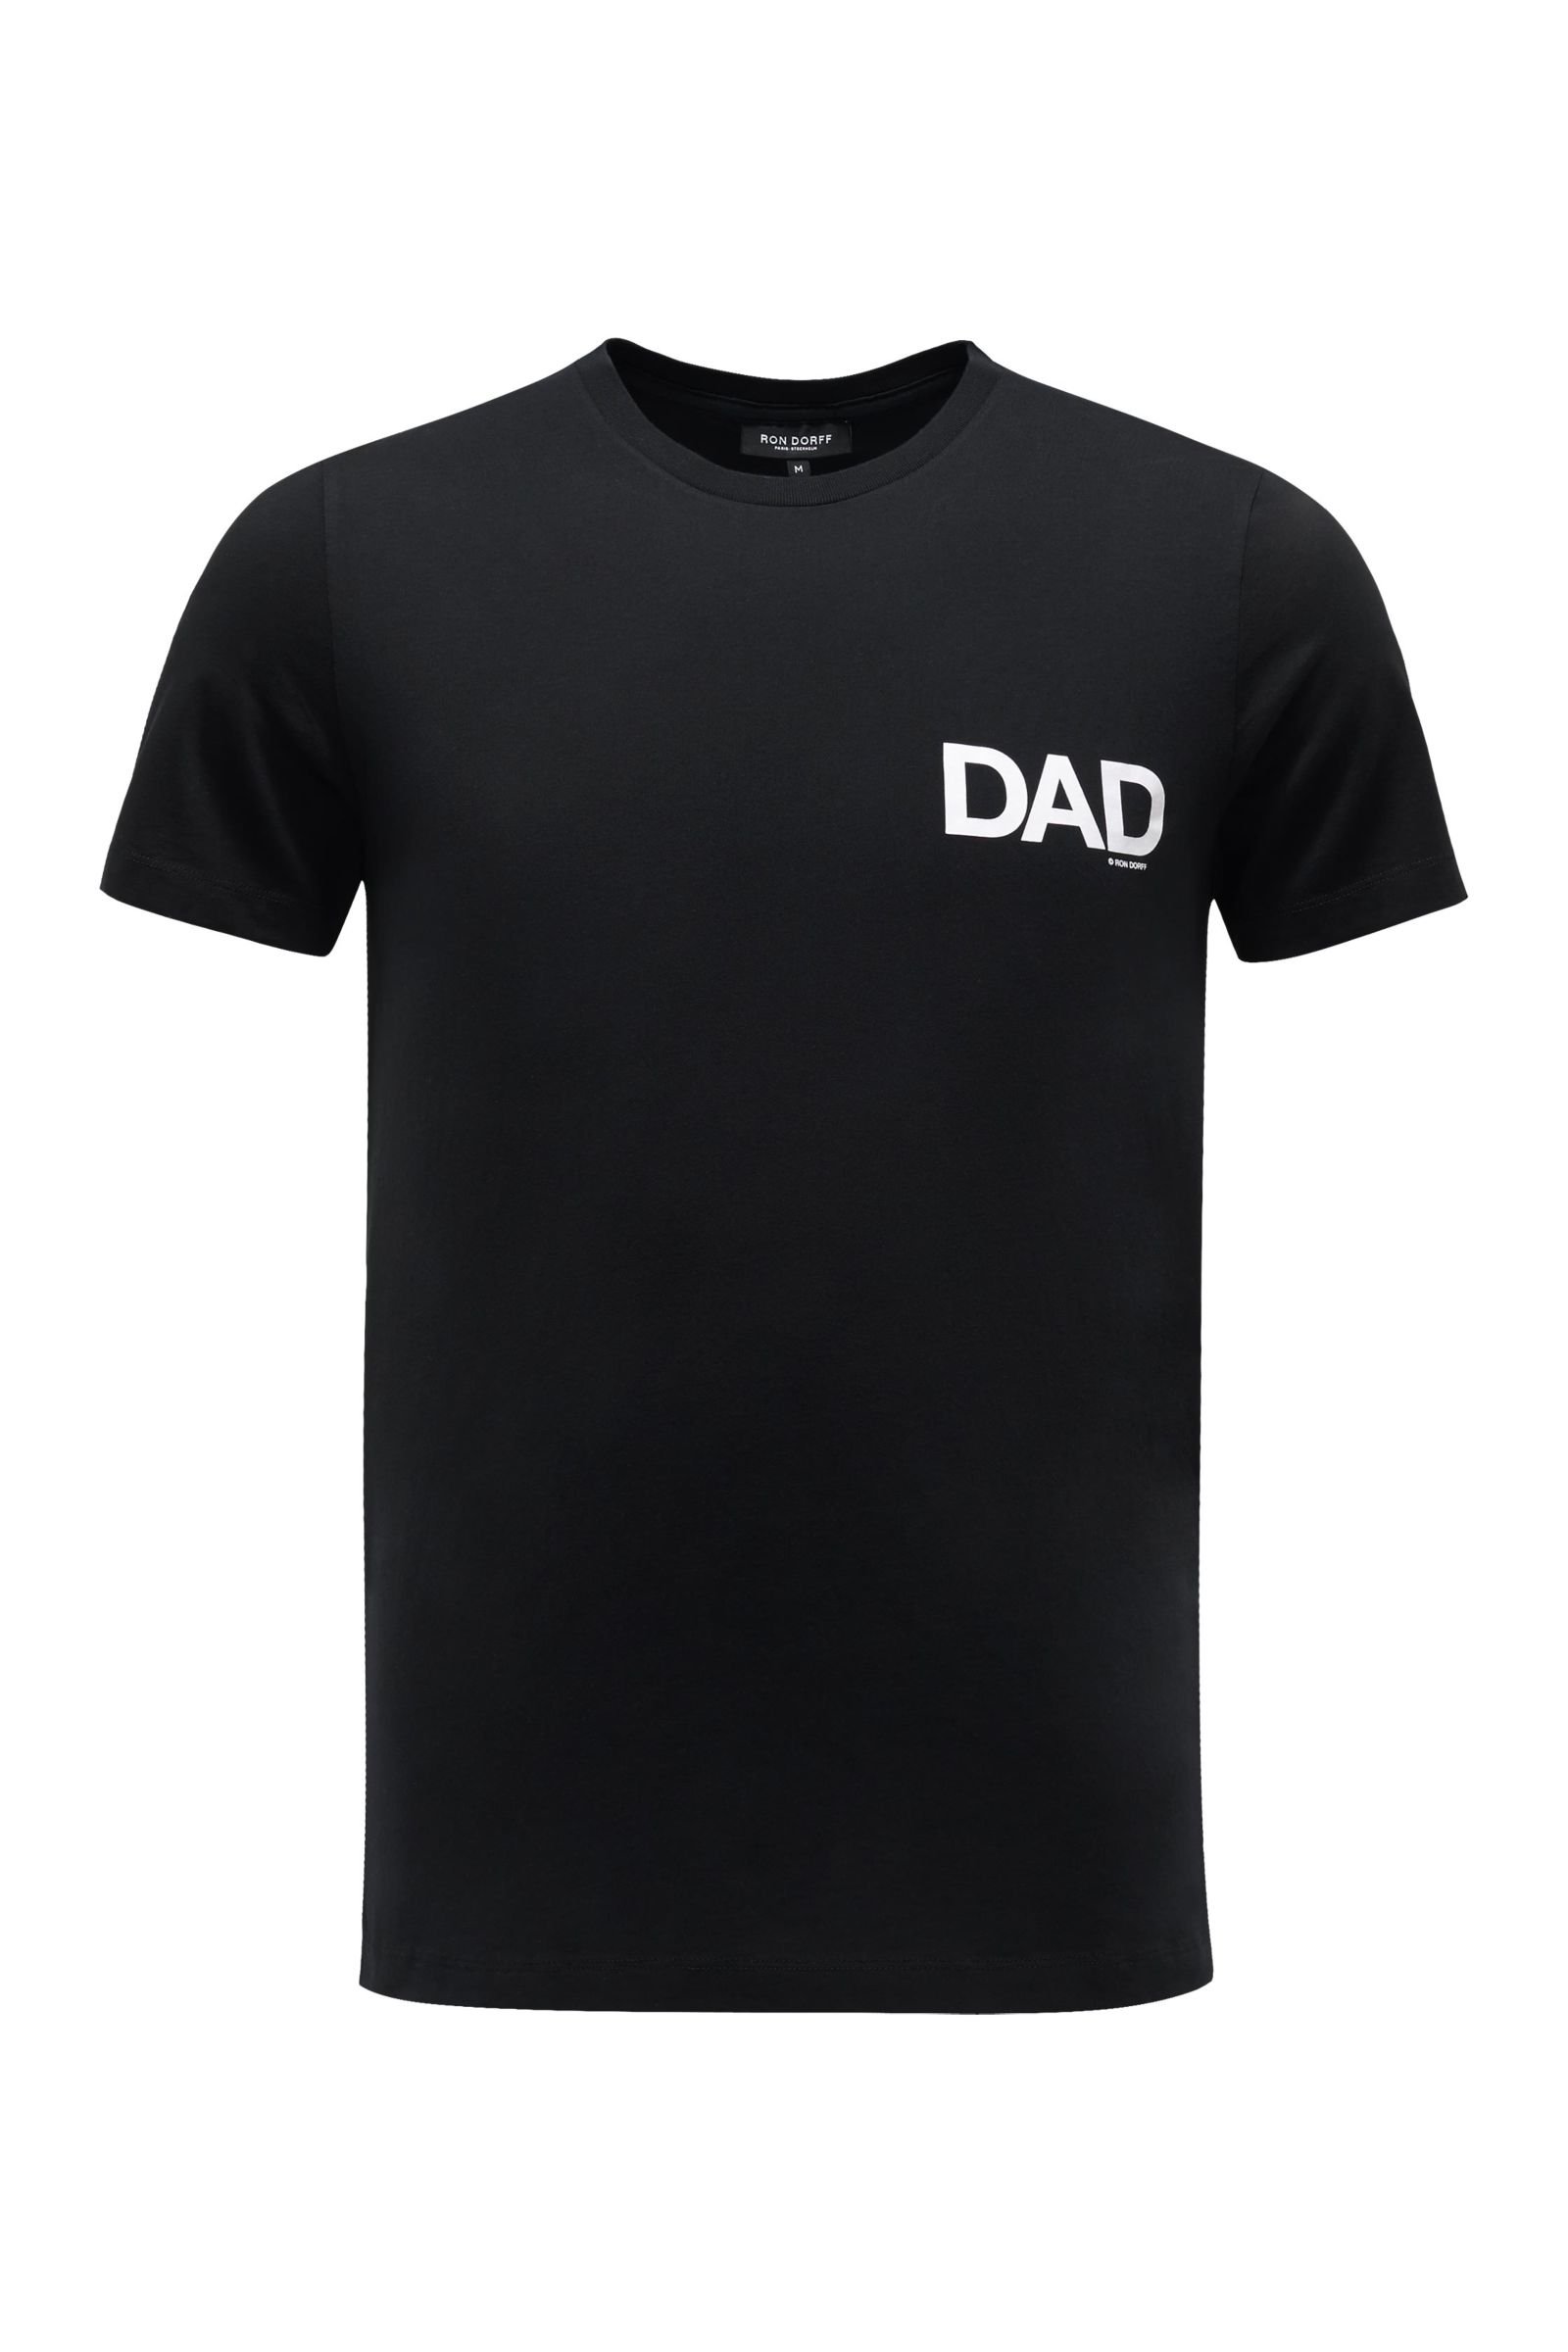 R-Neck T-Shirt 'Dad' schwarz